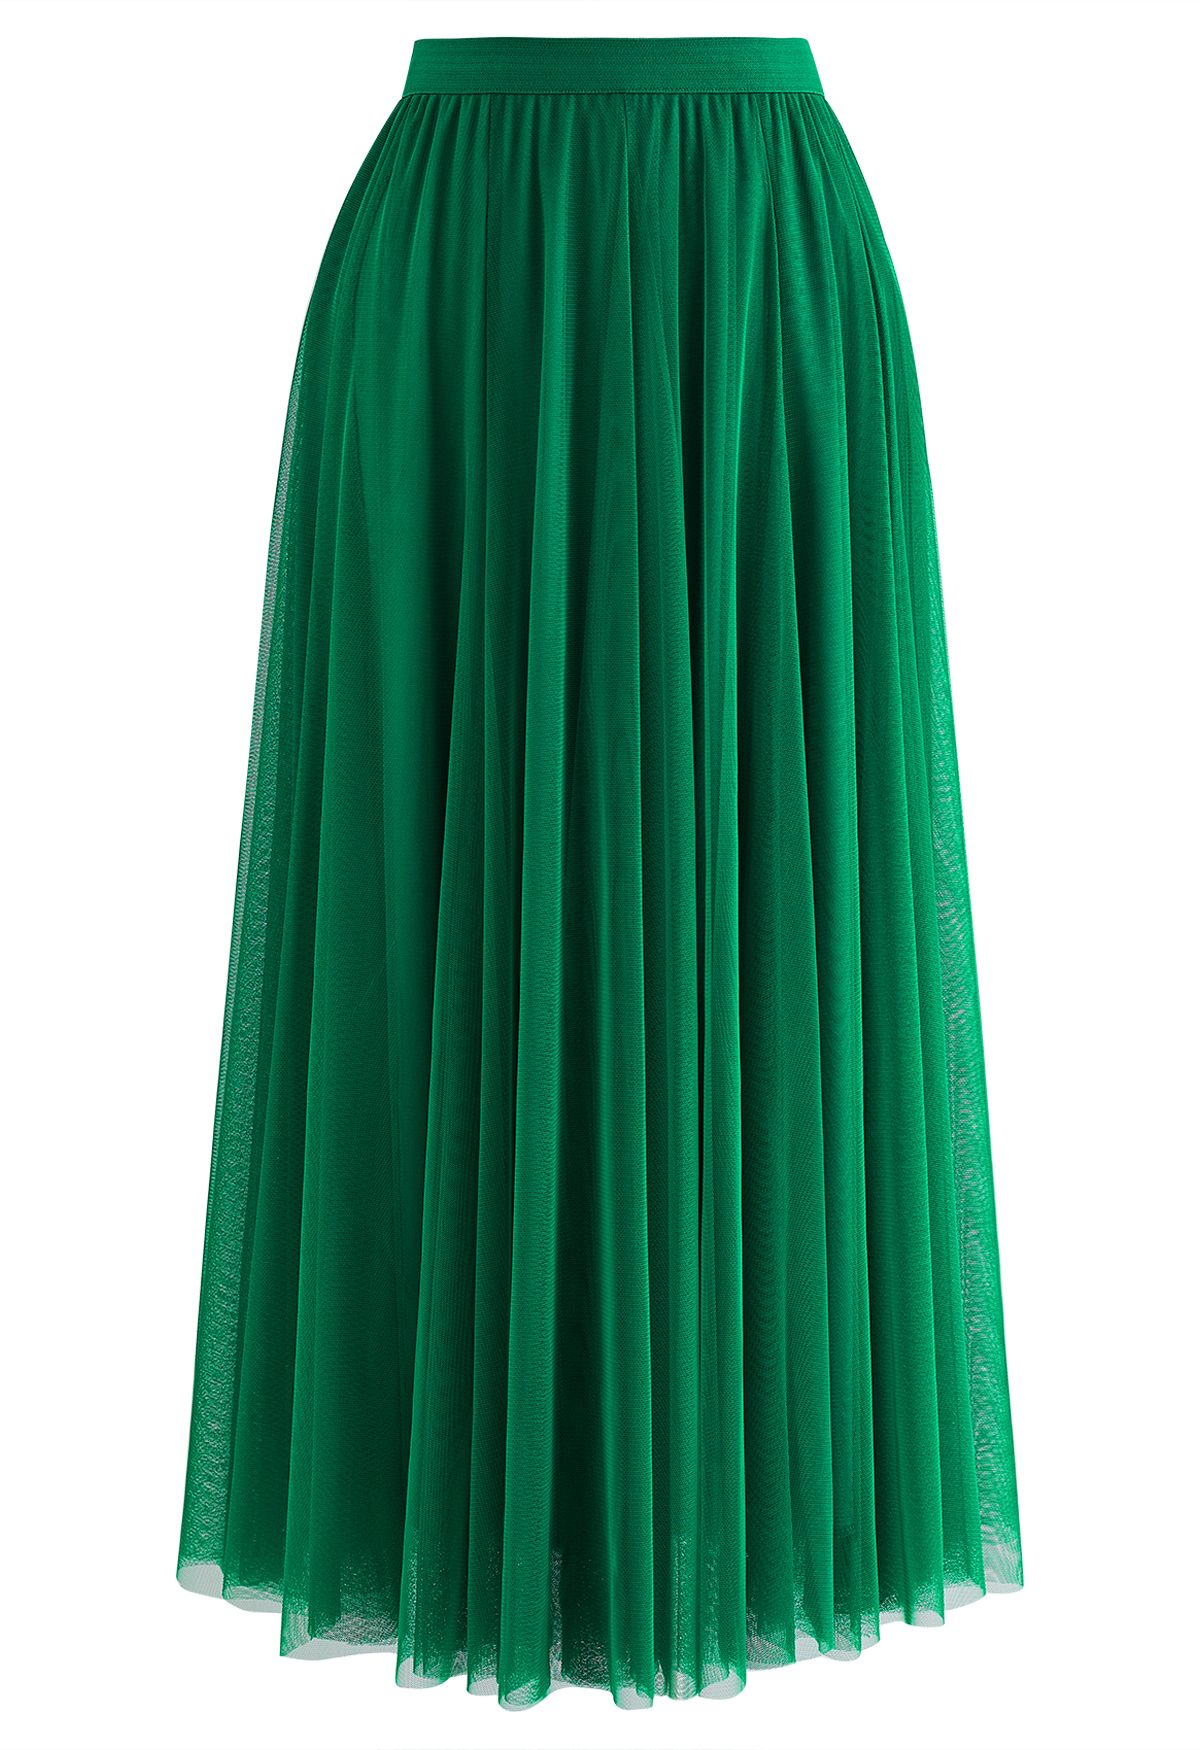 My Secret Garden Tulle Maxi Skirt in Green